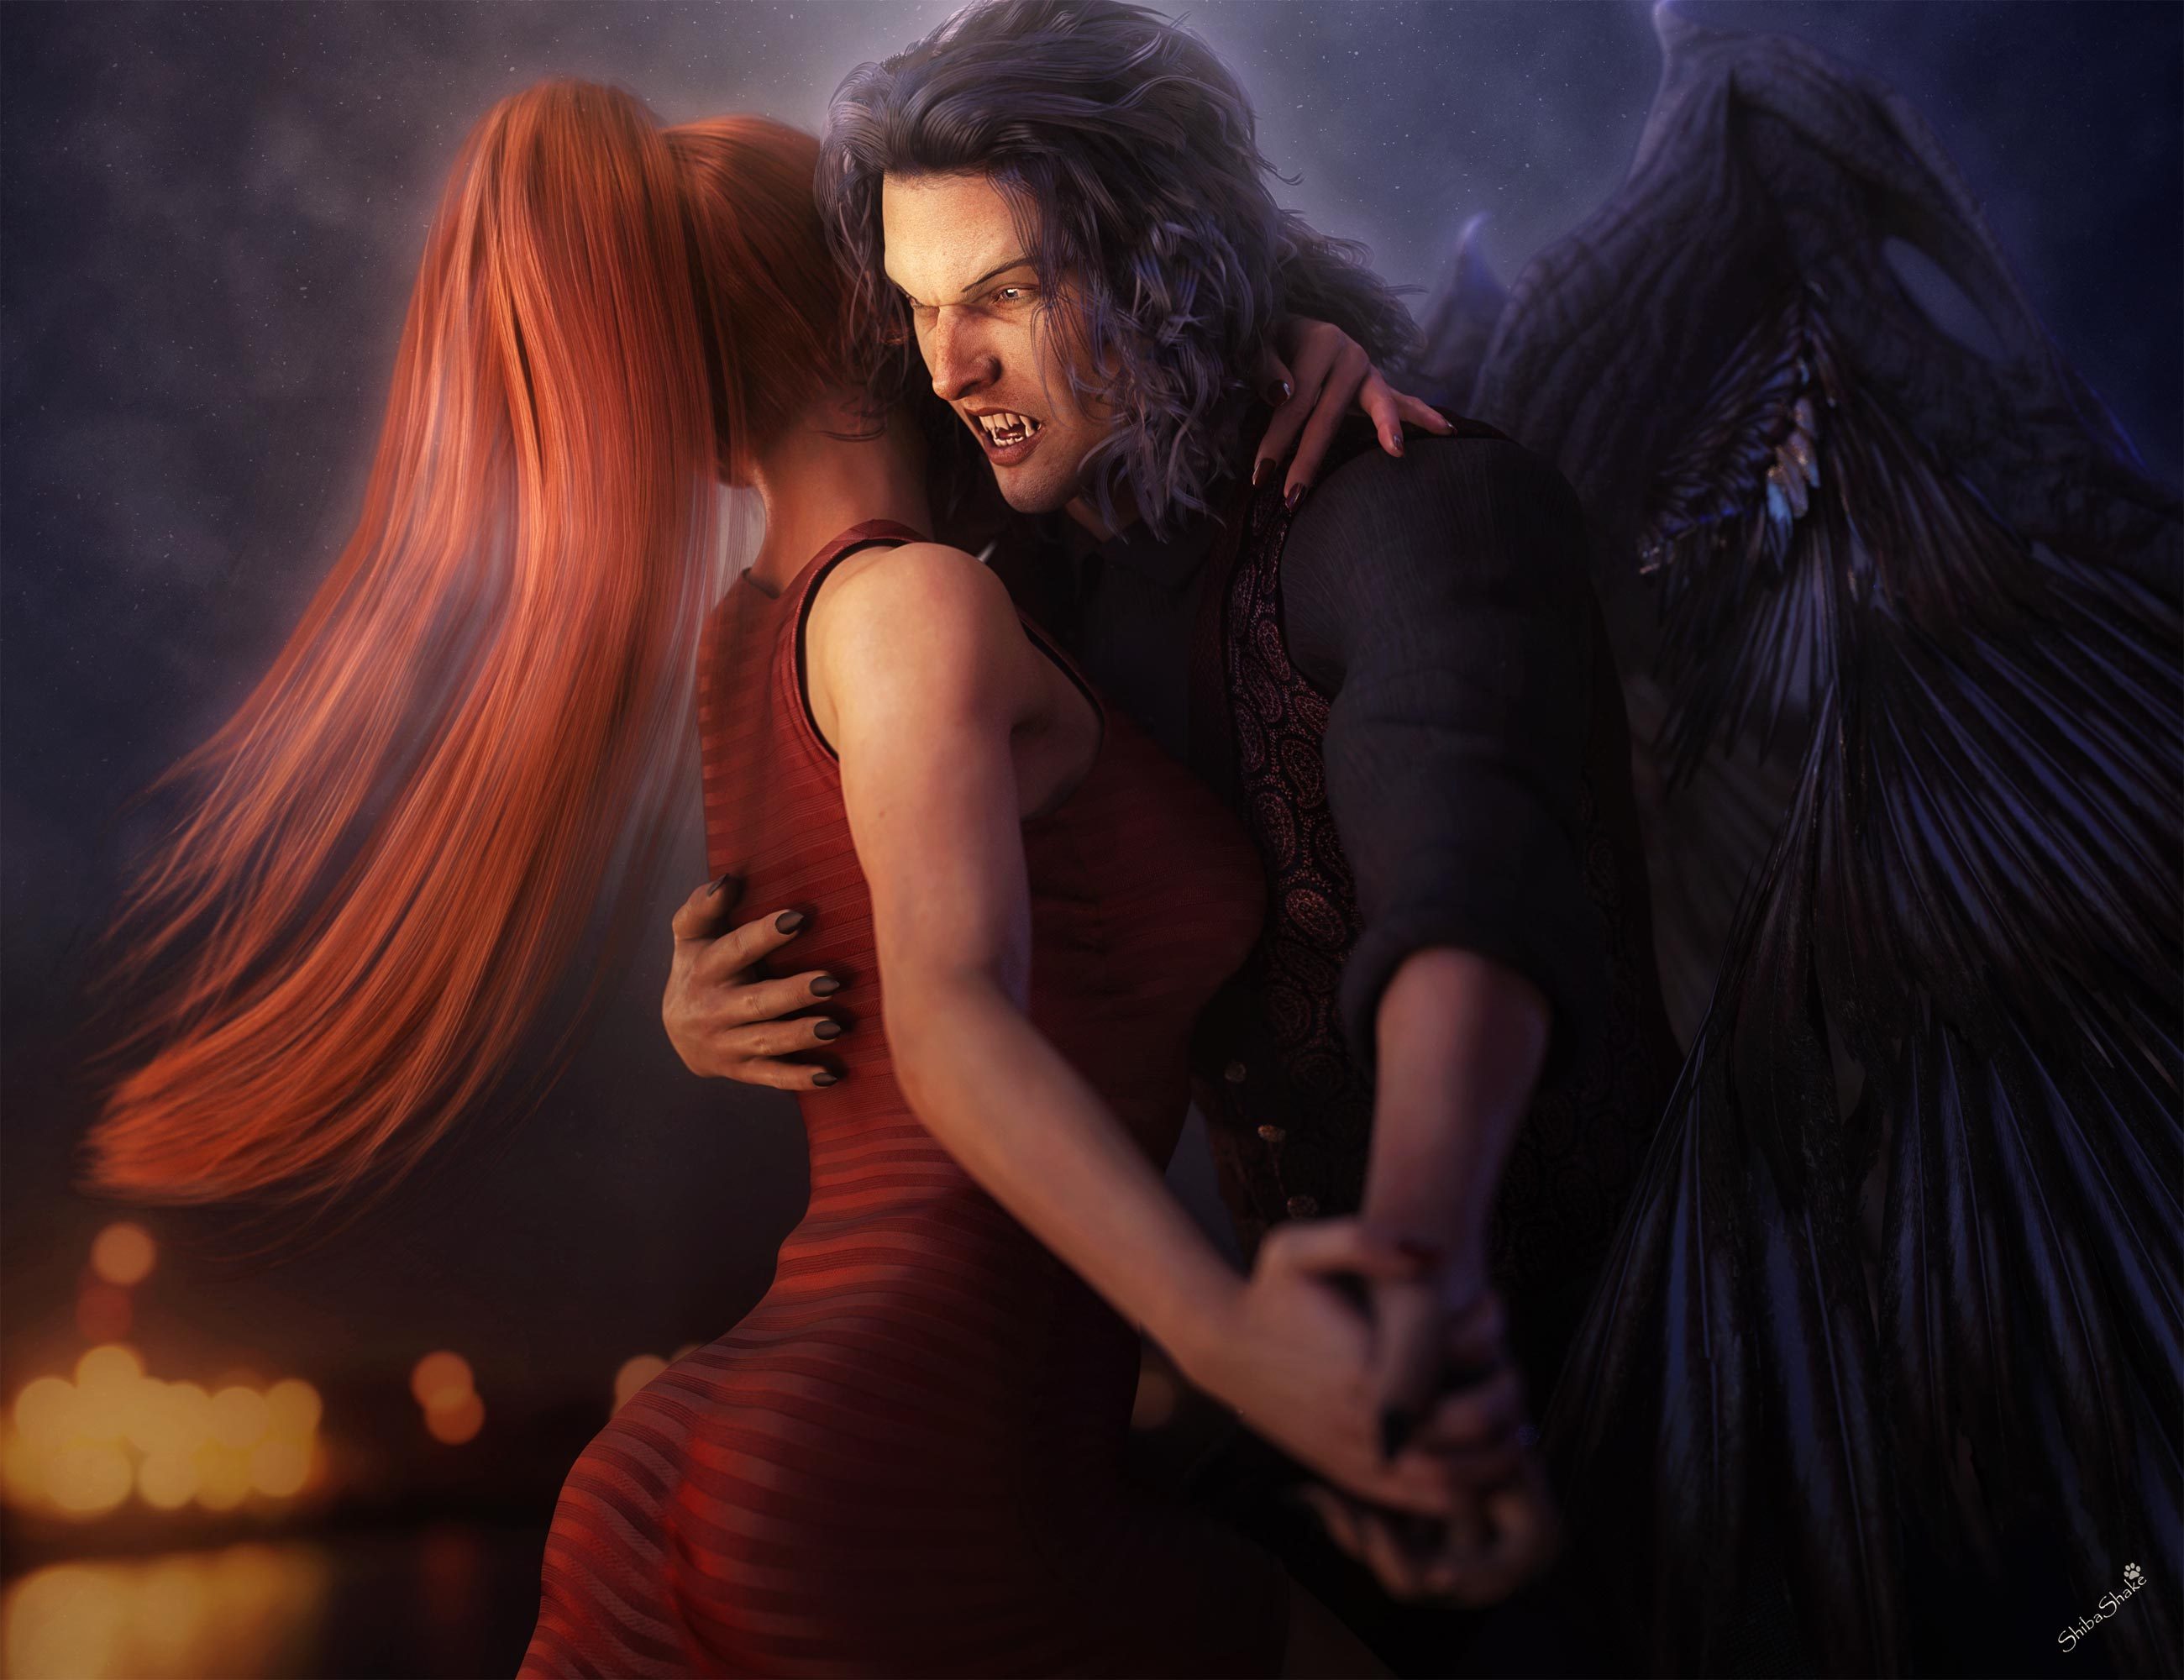 Ангел и демон про любовь. Вампир и девушка любовь. Влюбленные фэнтези. Демоны любви. Фэнтези любовь.